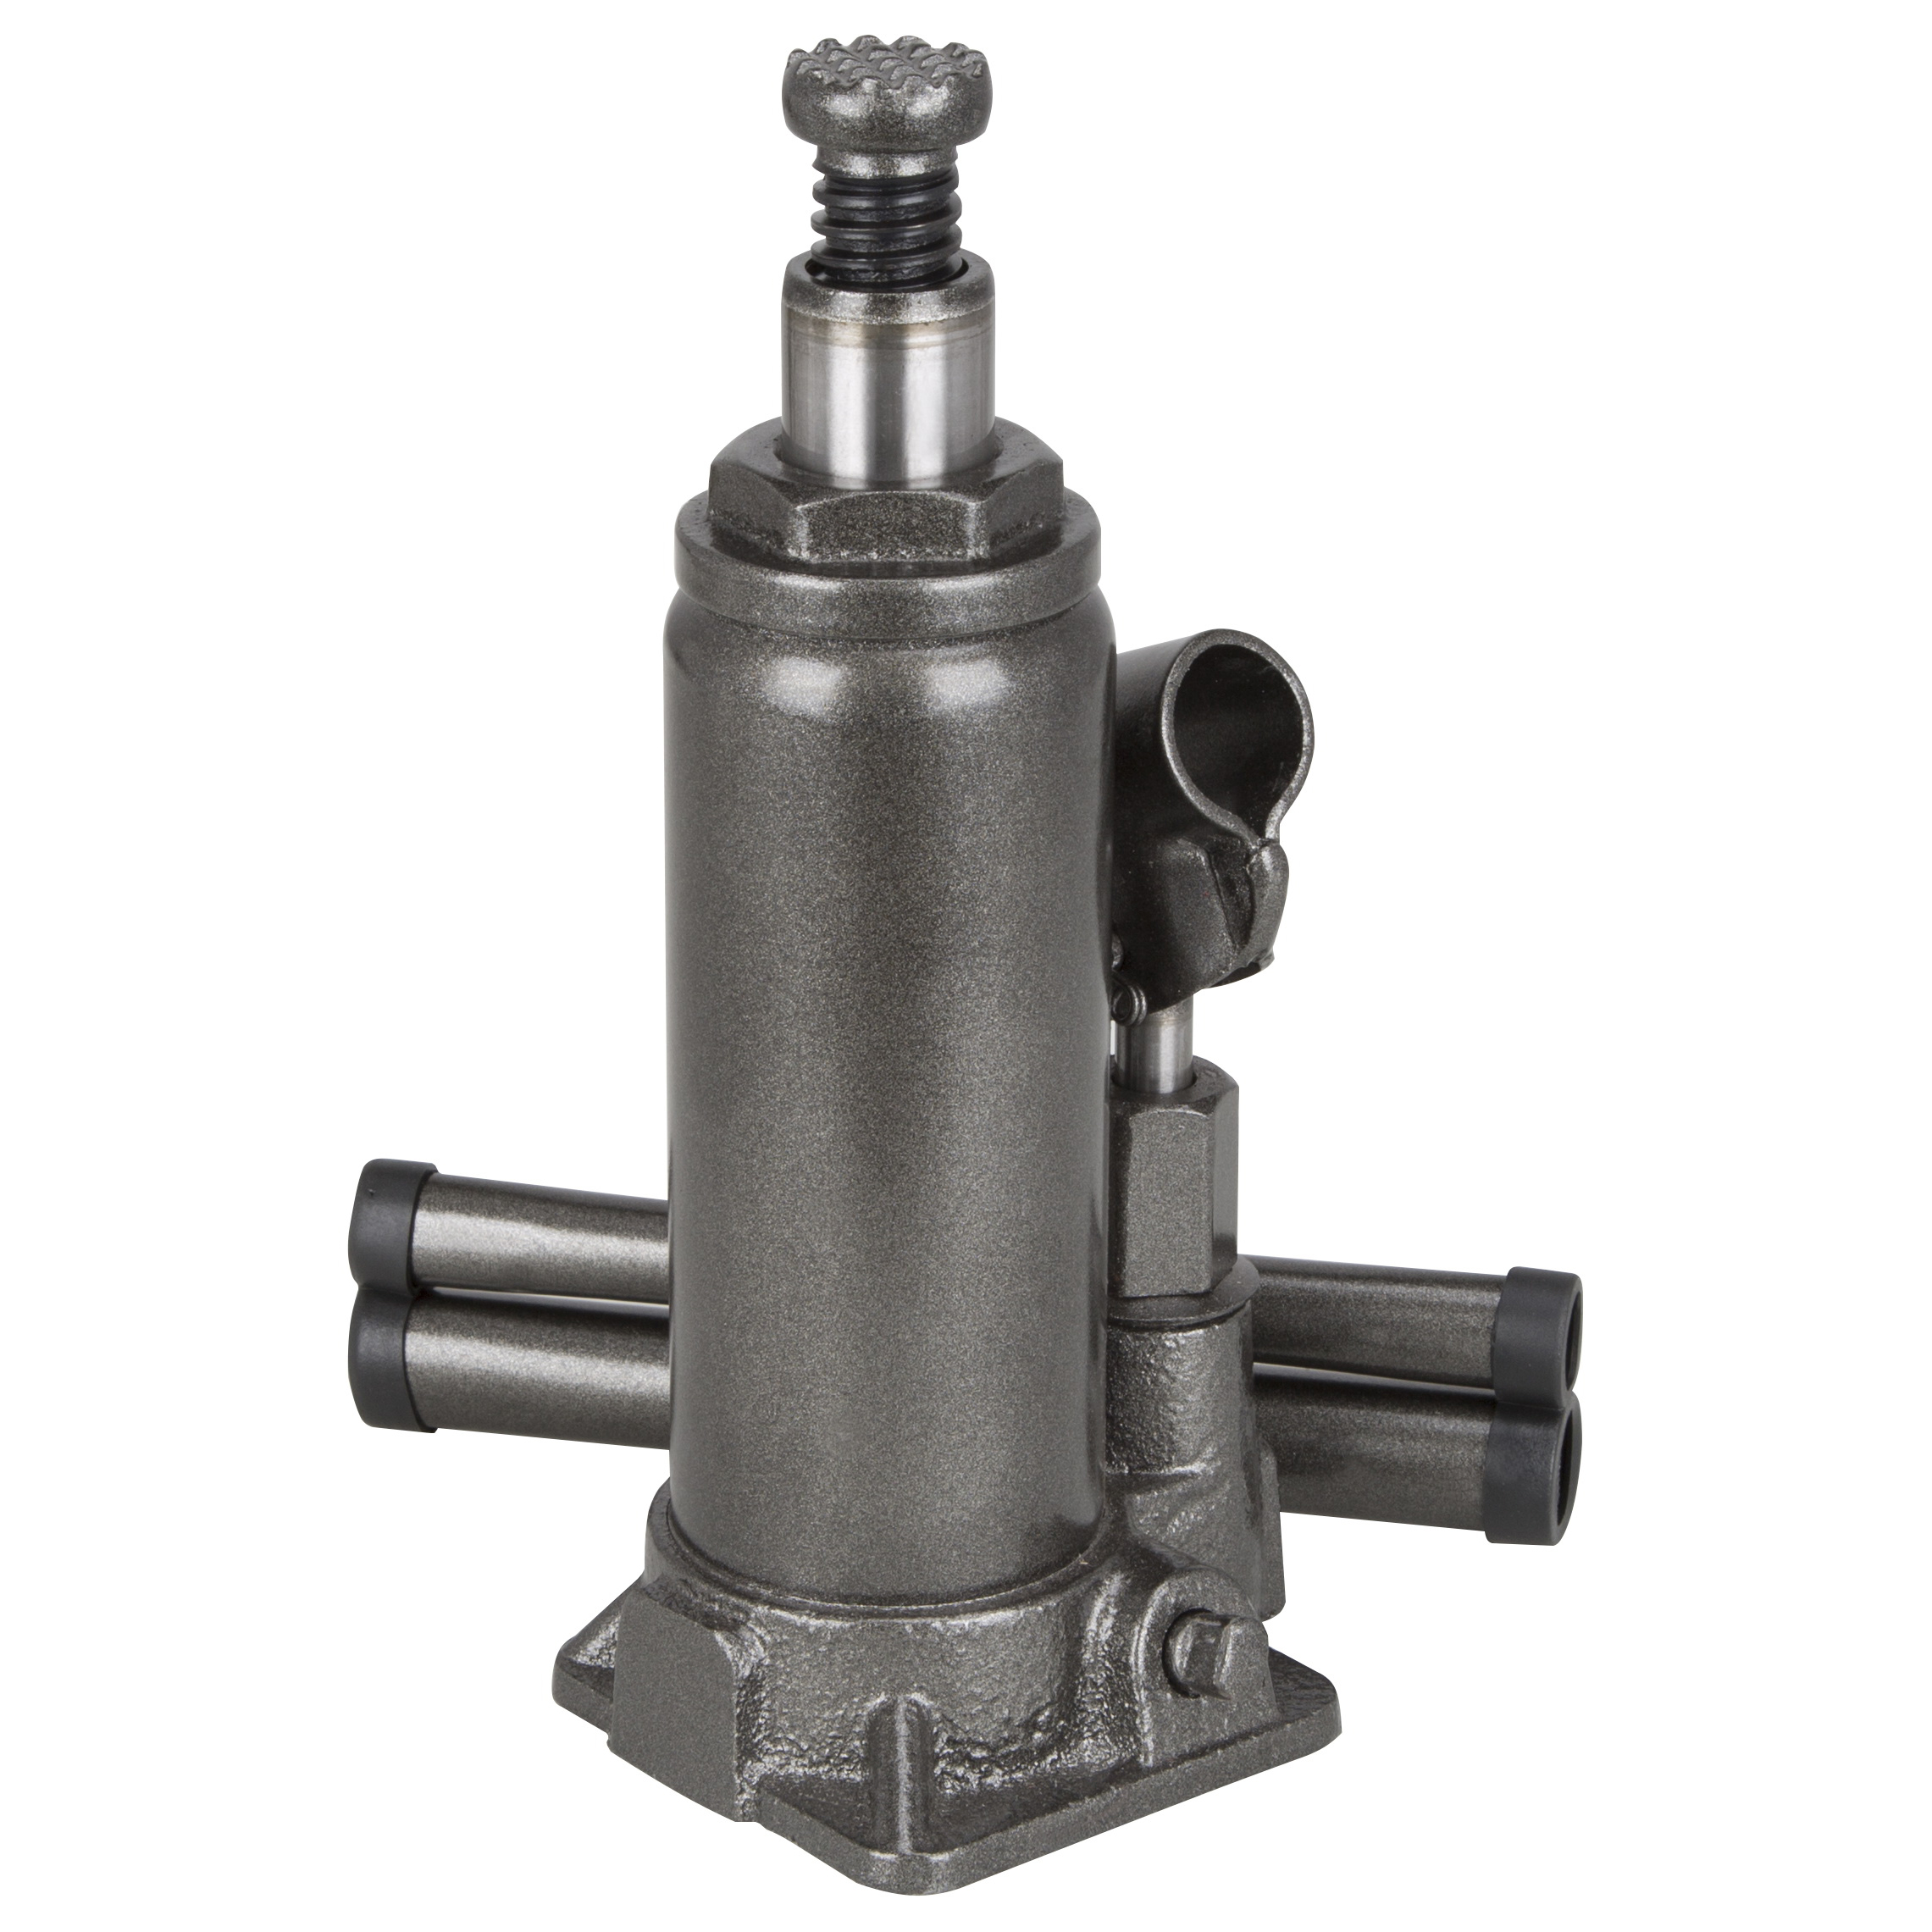 T010704 Hydraulic Bottle Jack, 4 ton, 7-5/8 to 14-5/8 in Lift, Steel, Gray